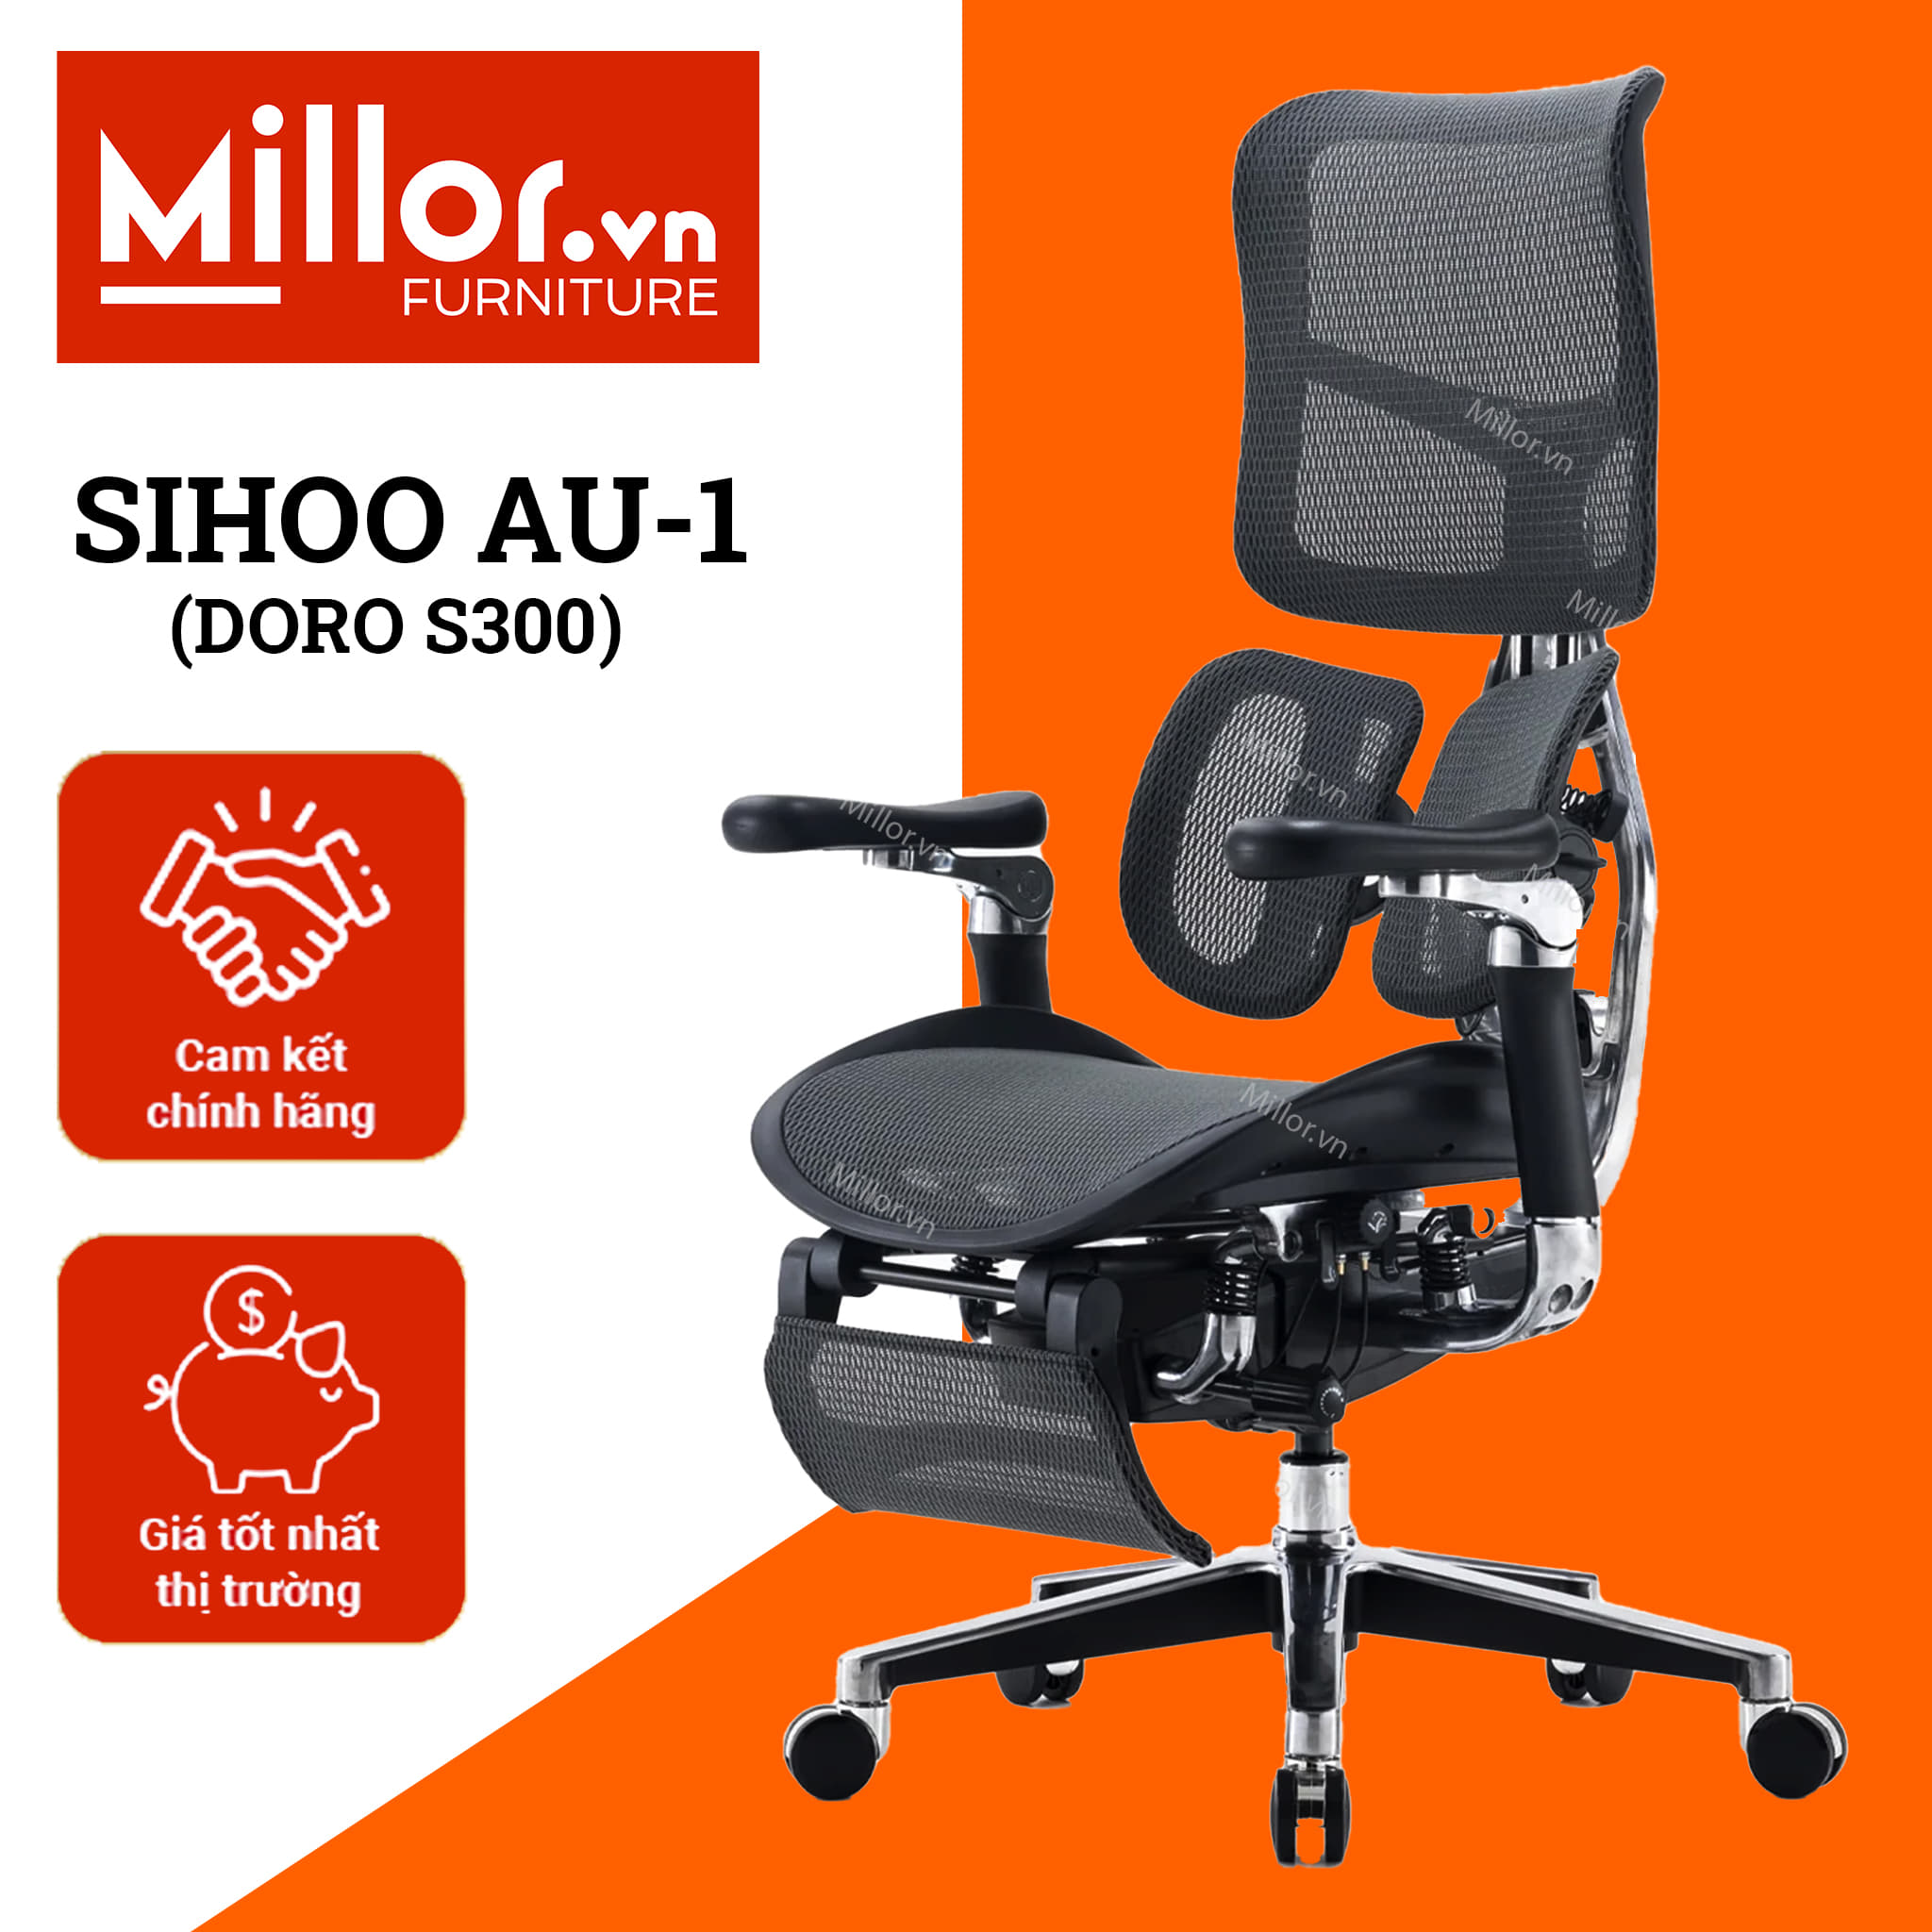 Sihoo AU-1 Doro S300 Đen - Ghế văn phòng công thái học - Ergonomic Chair